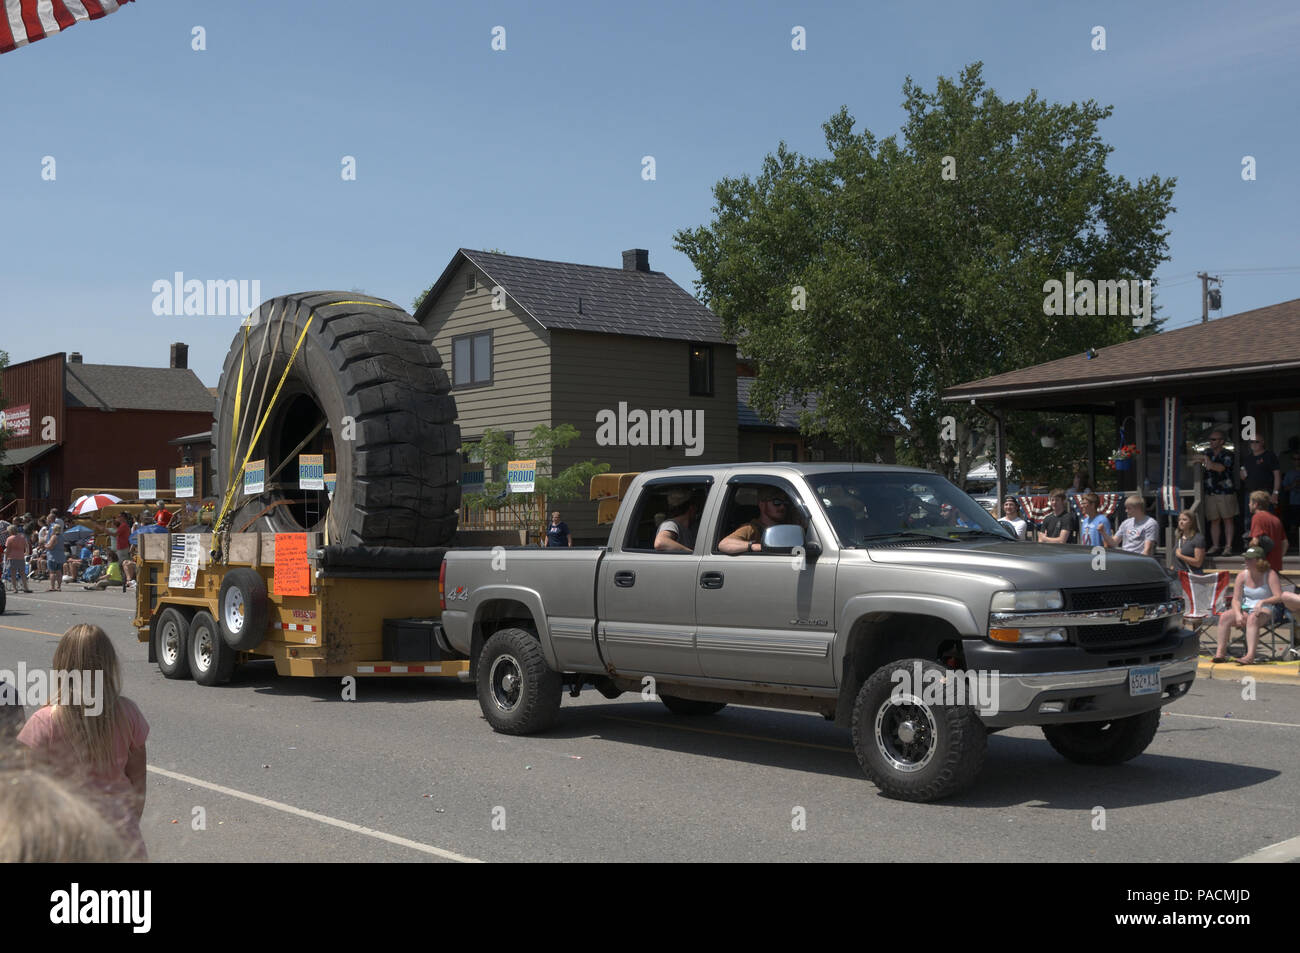 Un gigante off road carrello pneumatico in un giorno 4 luglio sfilata a sostegno dell'industria mineraria in Minnesota, Stati Uniti d'America Foto Stock